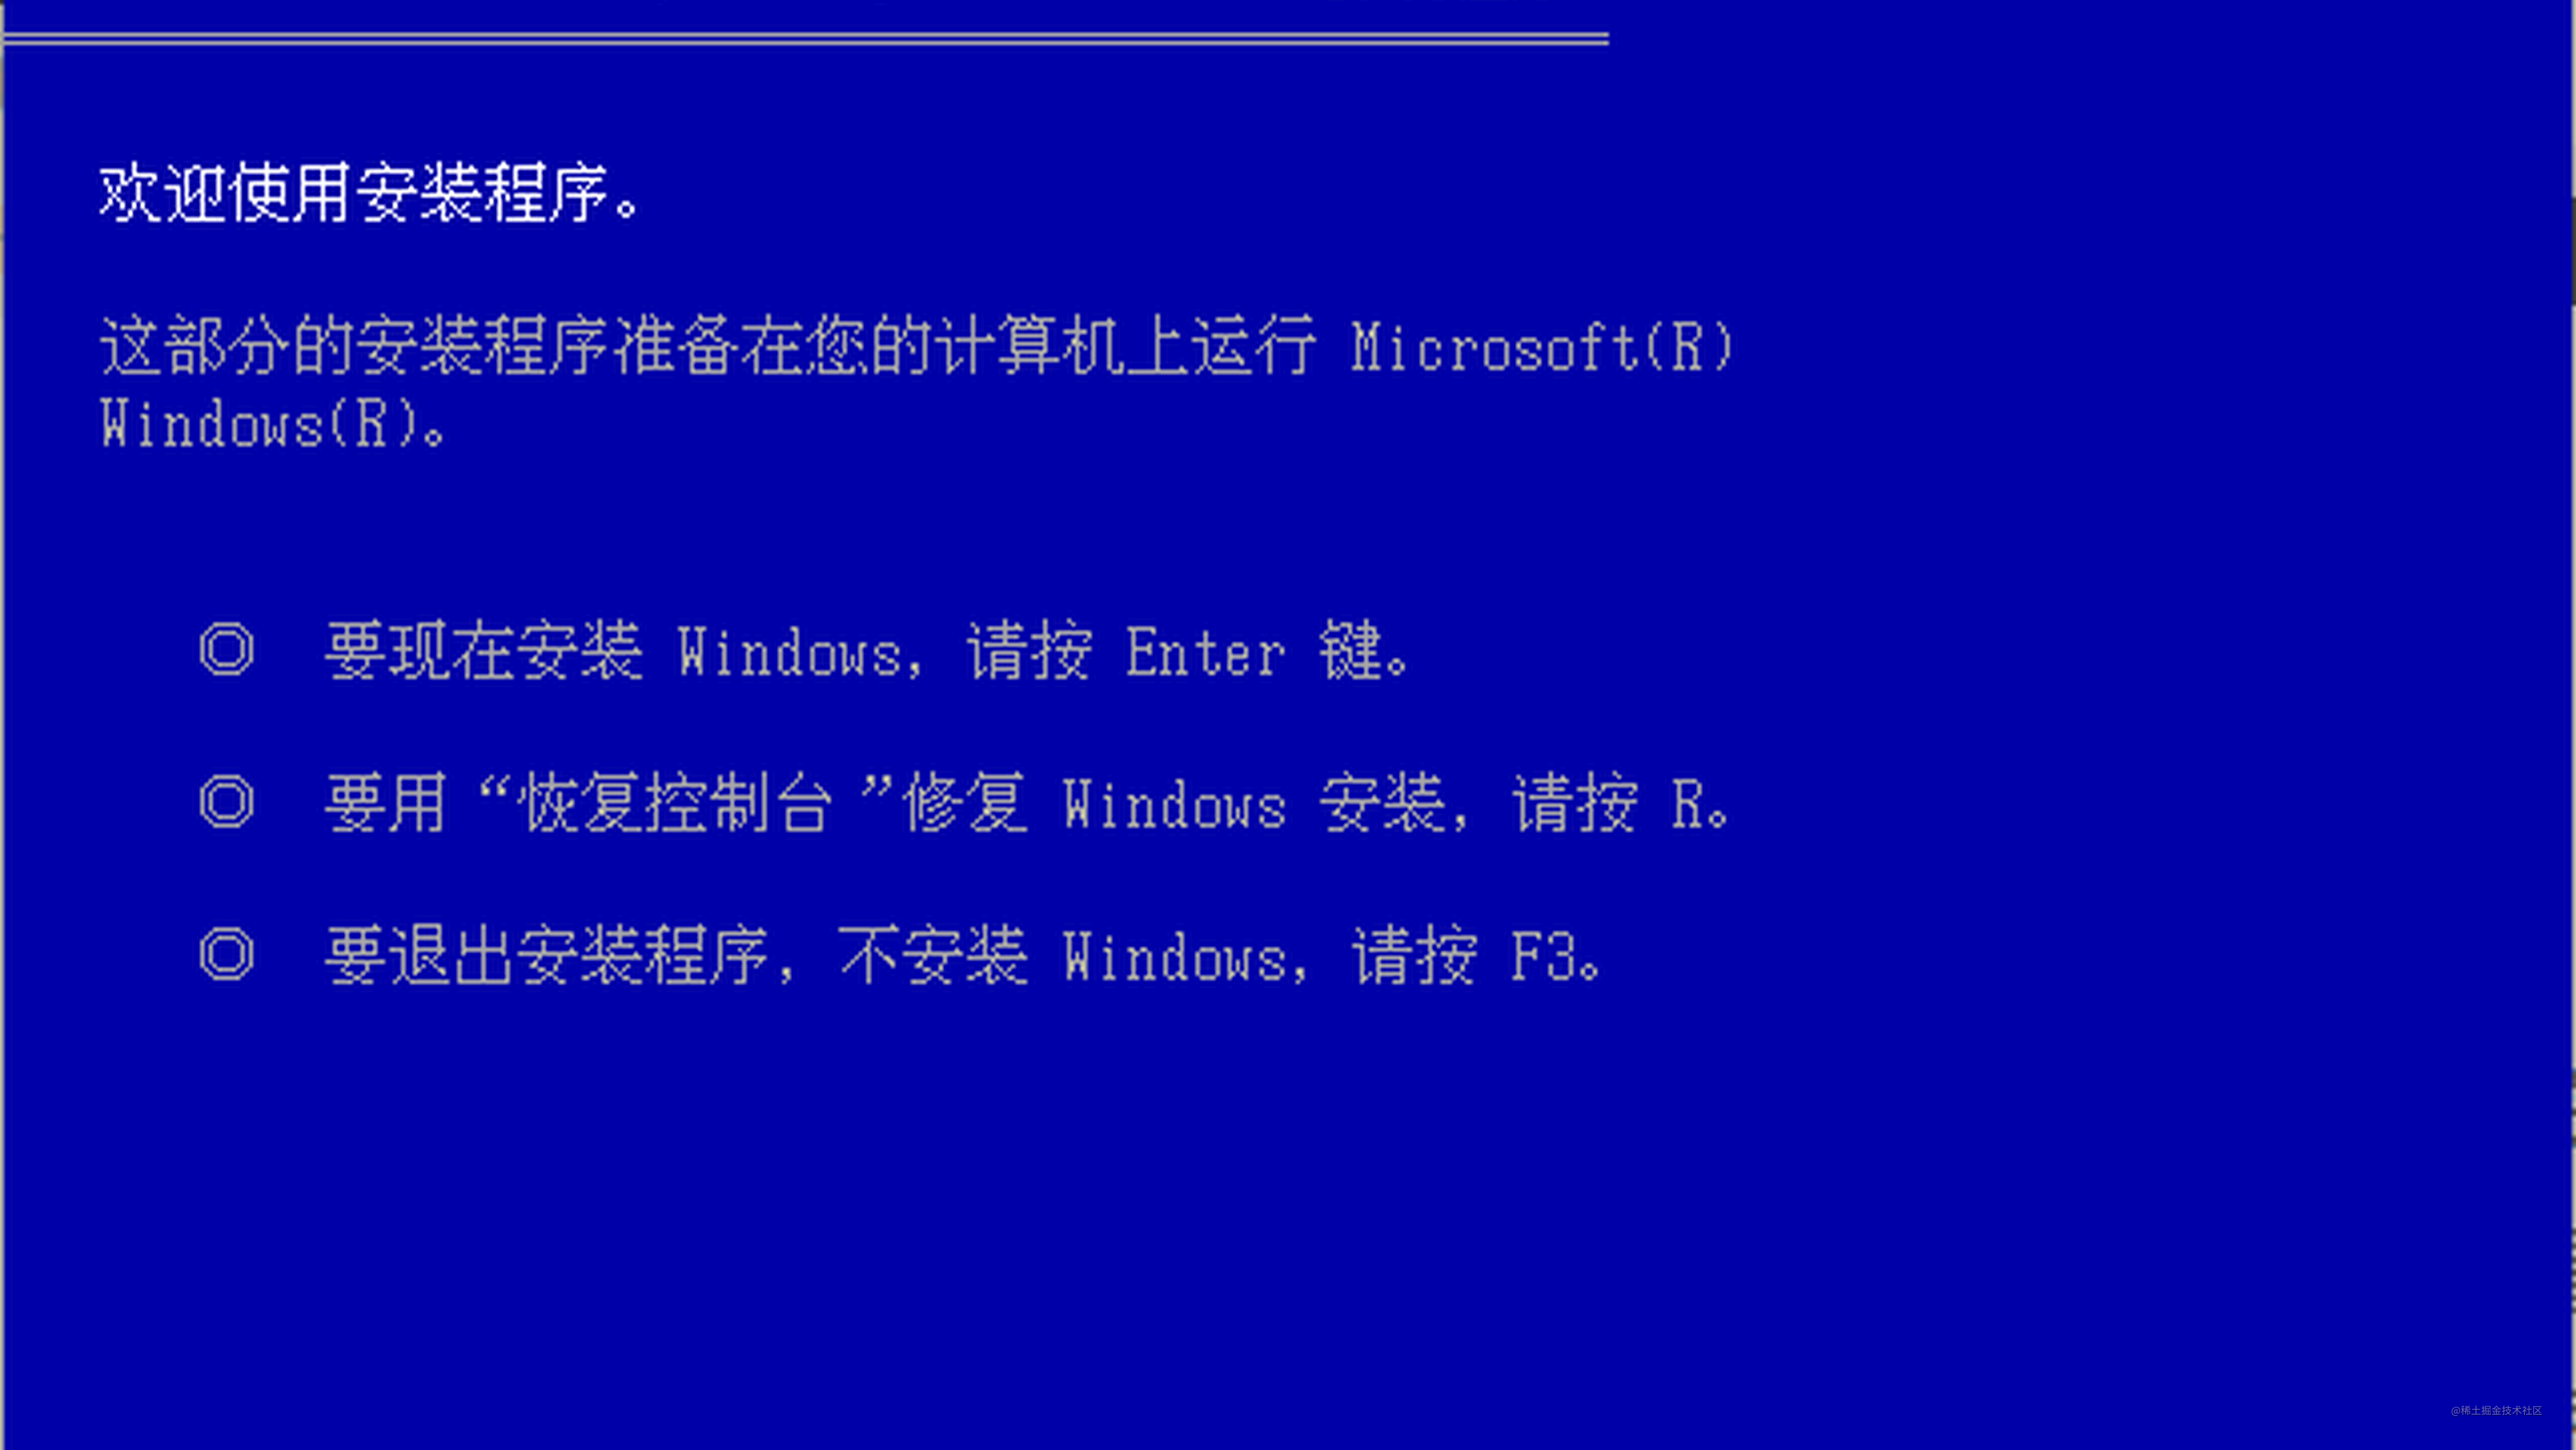 virtualbox安装Windows server 2003